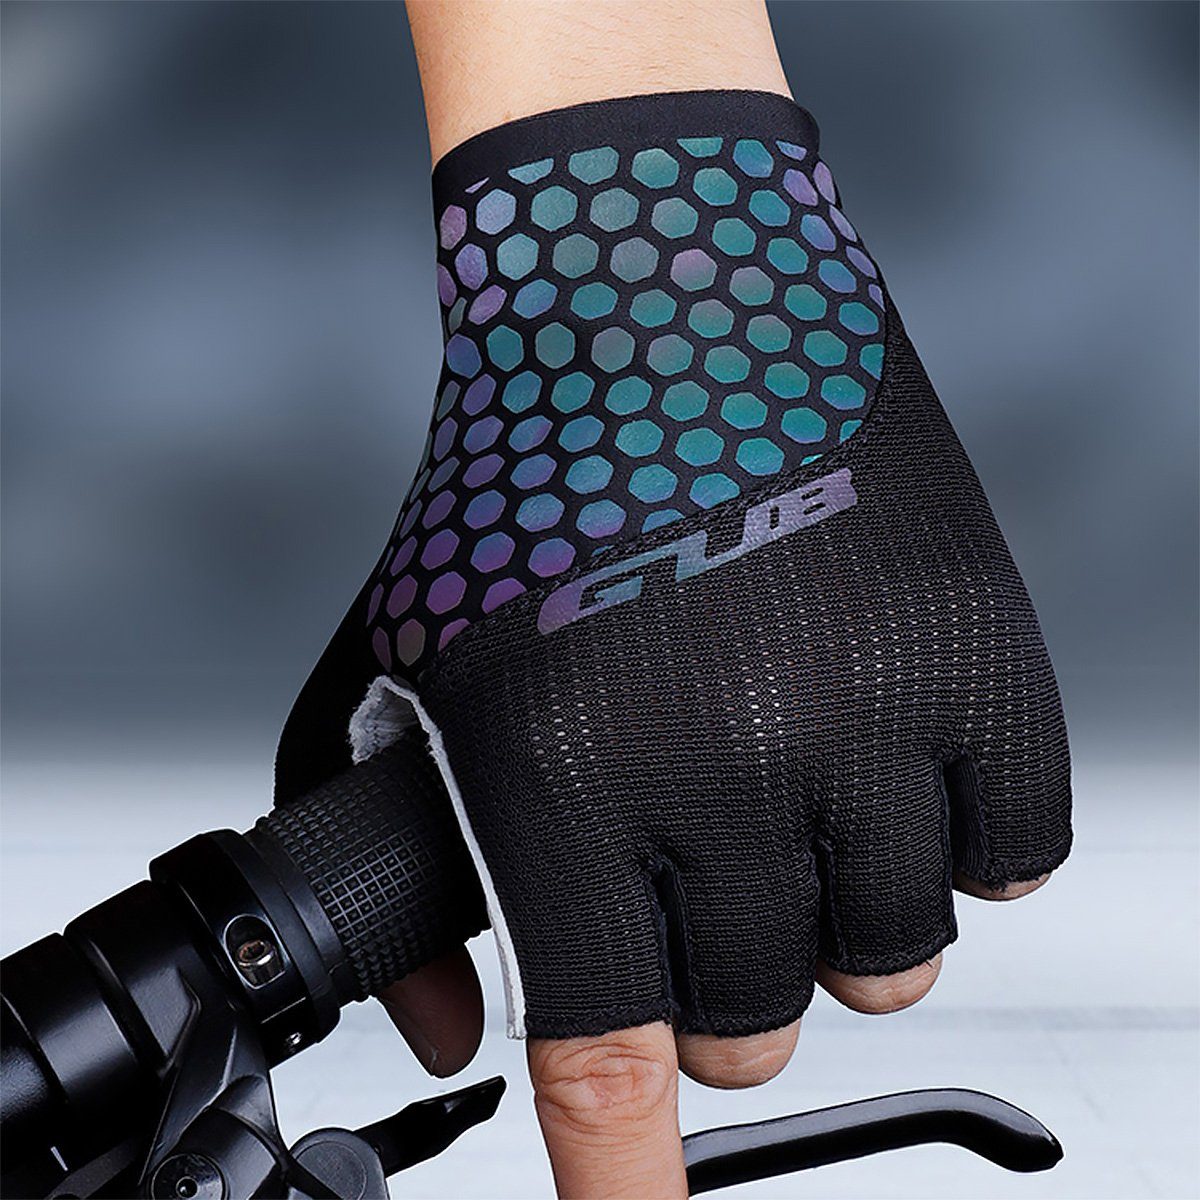 GUB Fahrrad Schaumstoff-Posterung Leder Handschuhe Fahrradhandschuhe mit MidGard